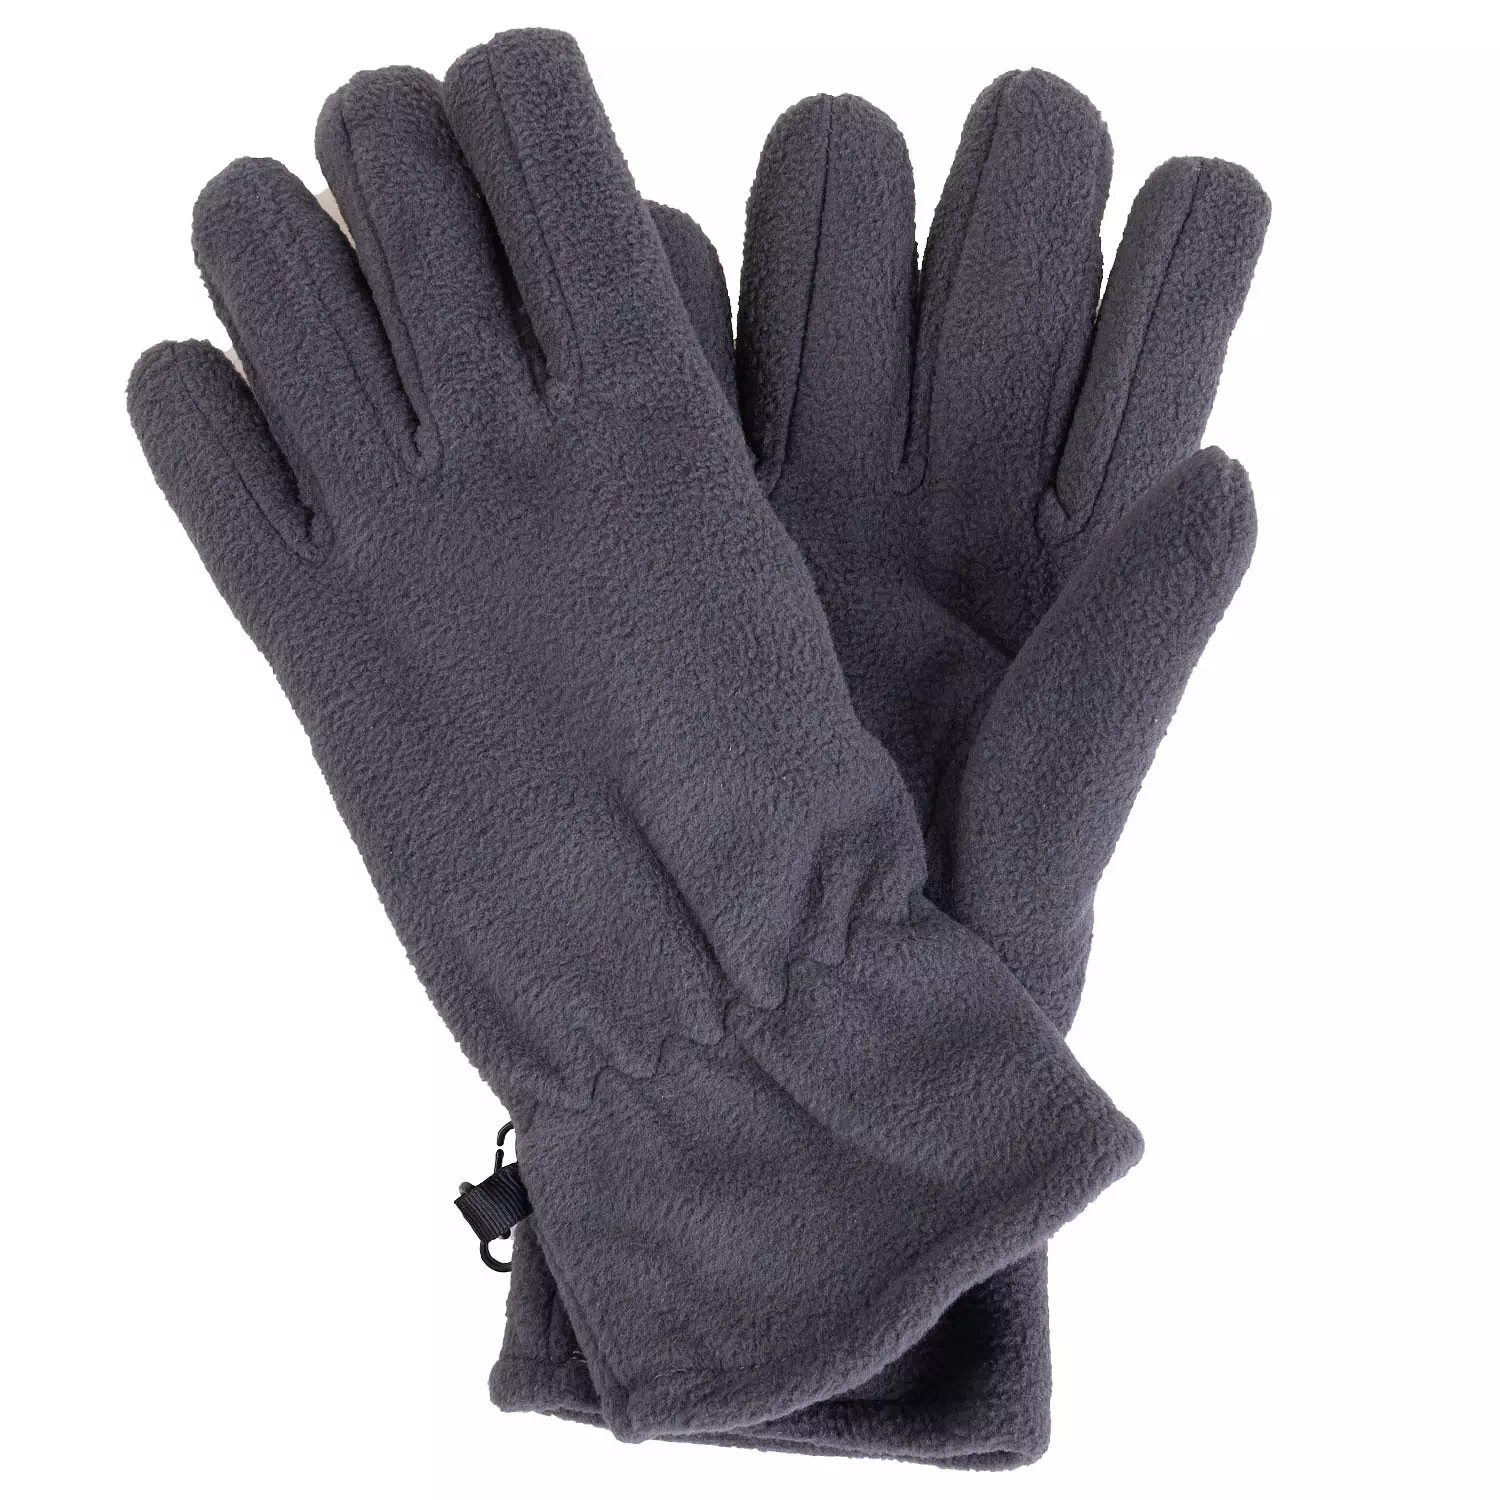 Polar fleece gloves, grey